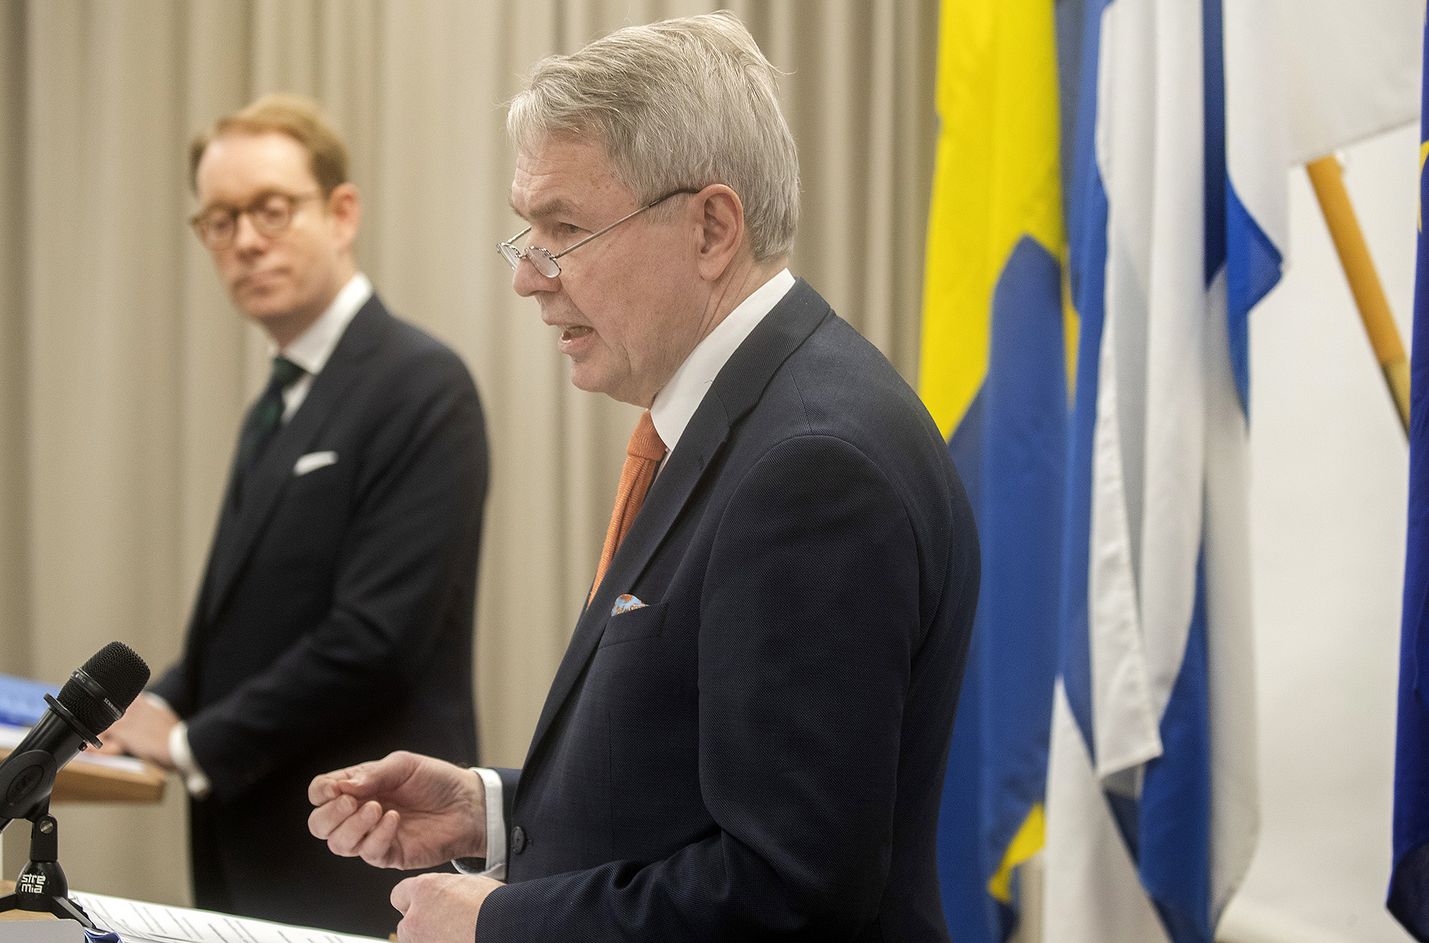 Ulkoministeri Pekka Haavisto tapasi tiistaina Ruotsin ulkoministerin Tobias Billströmin. Molemmat vakuuttivat, että maiden tavoitteena on eteneminen yhtä aikaa Natoon. Billström huomautti kuitenkin, että naapureilla on myös omat intressinsä Natoon menemisessä.